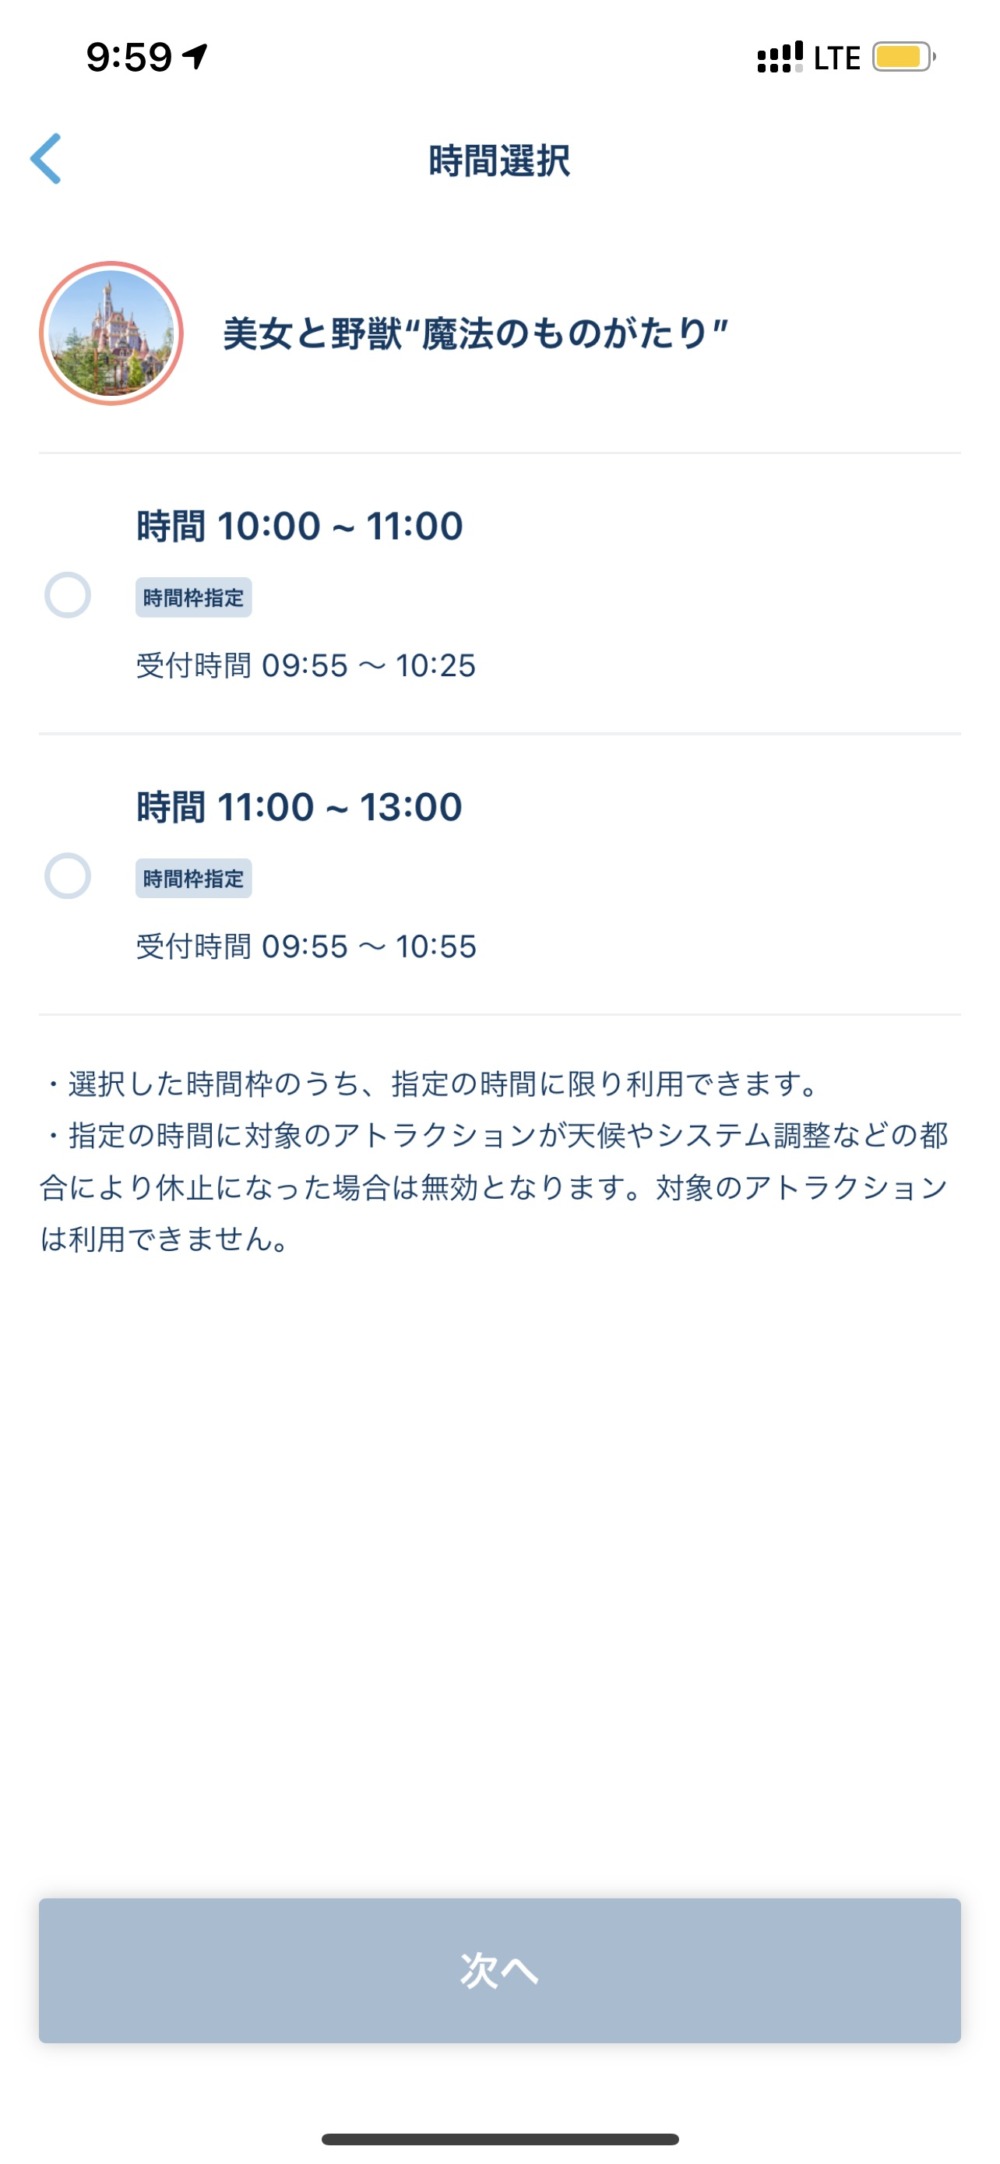 東京ディズニーランド・エントリーパス・時間選択画面